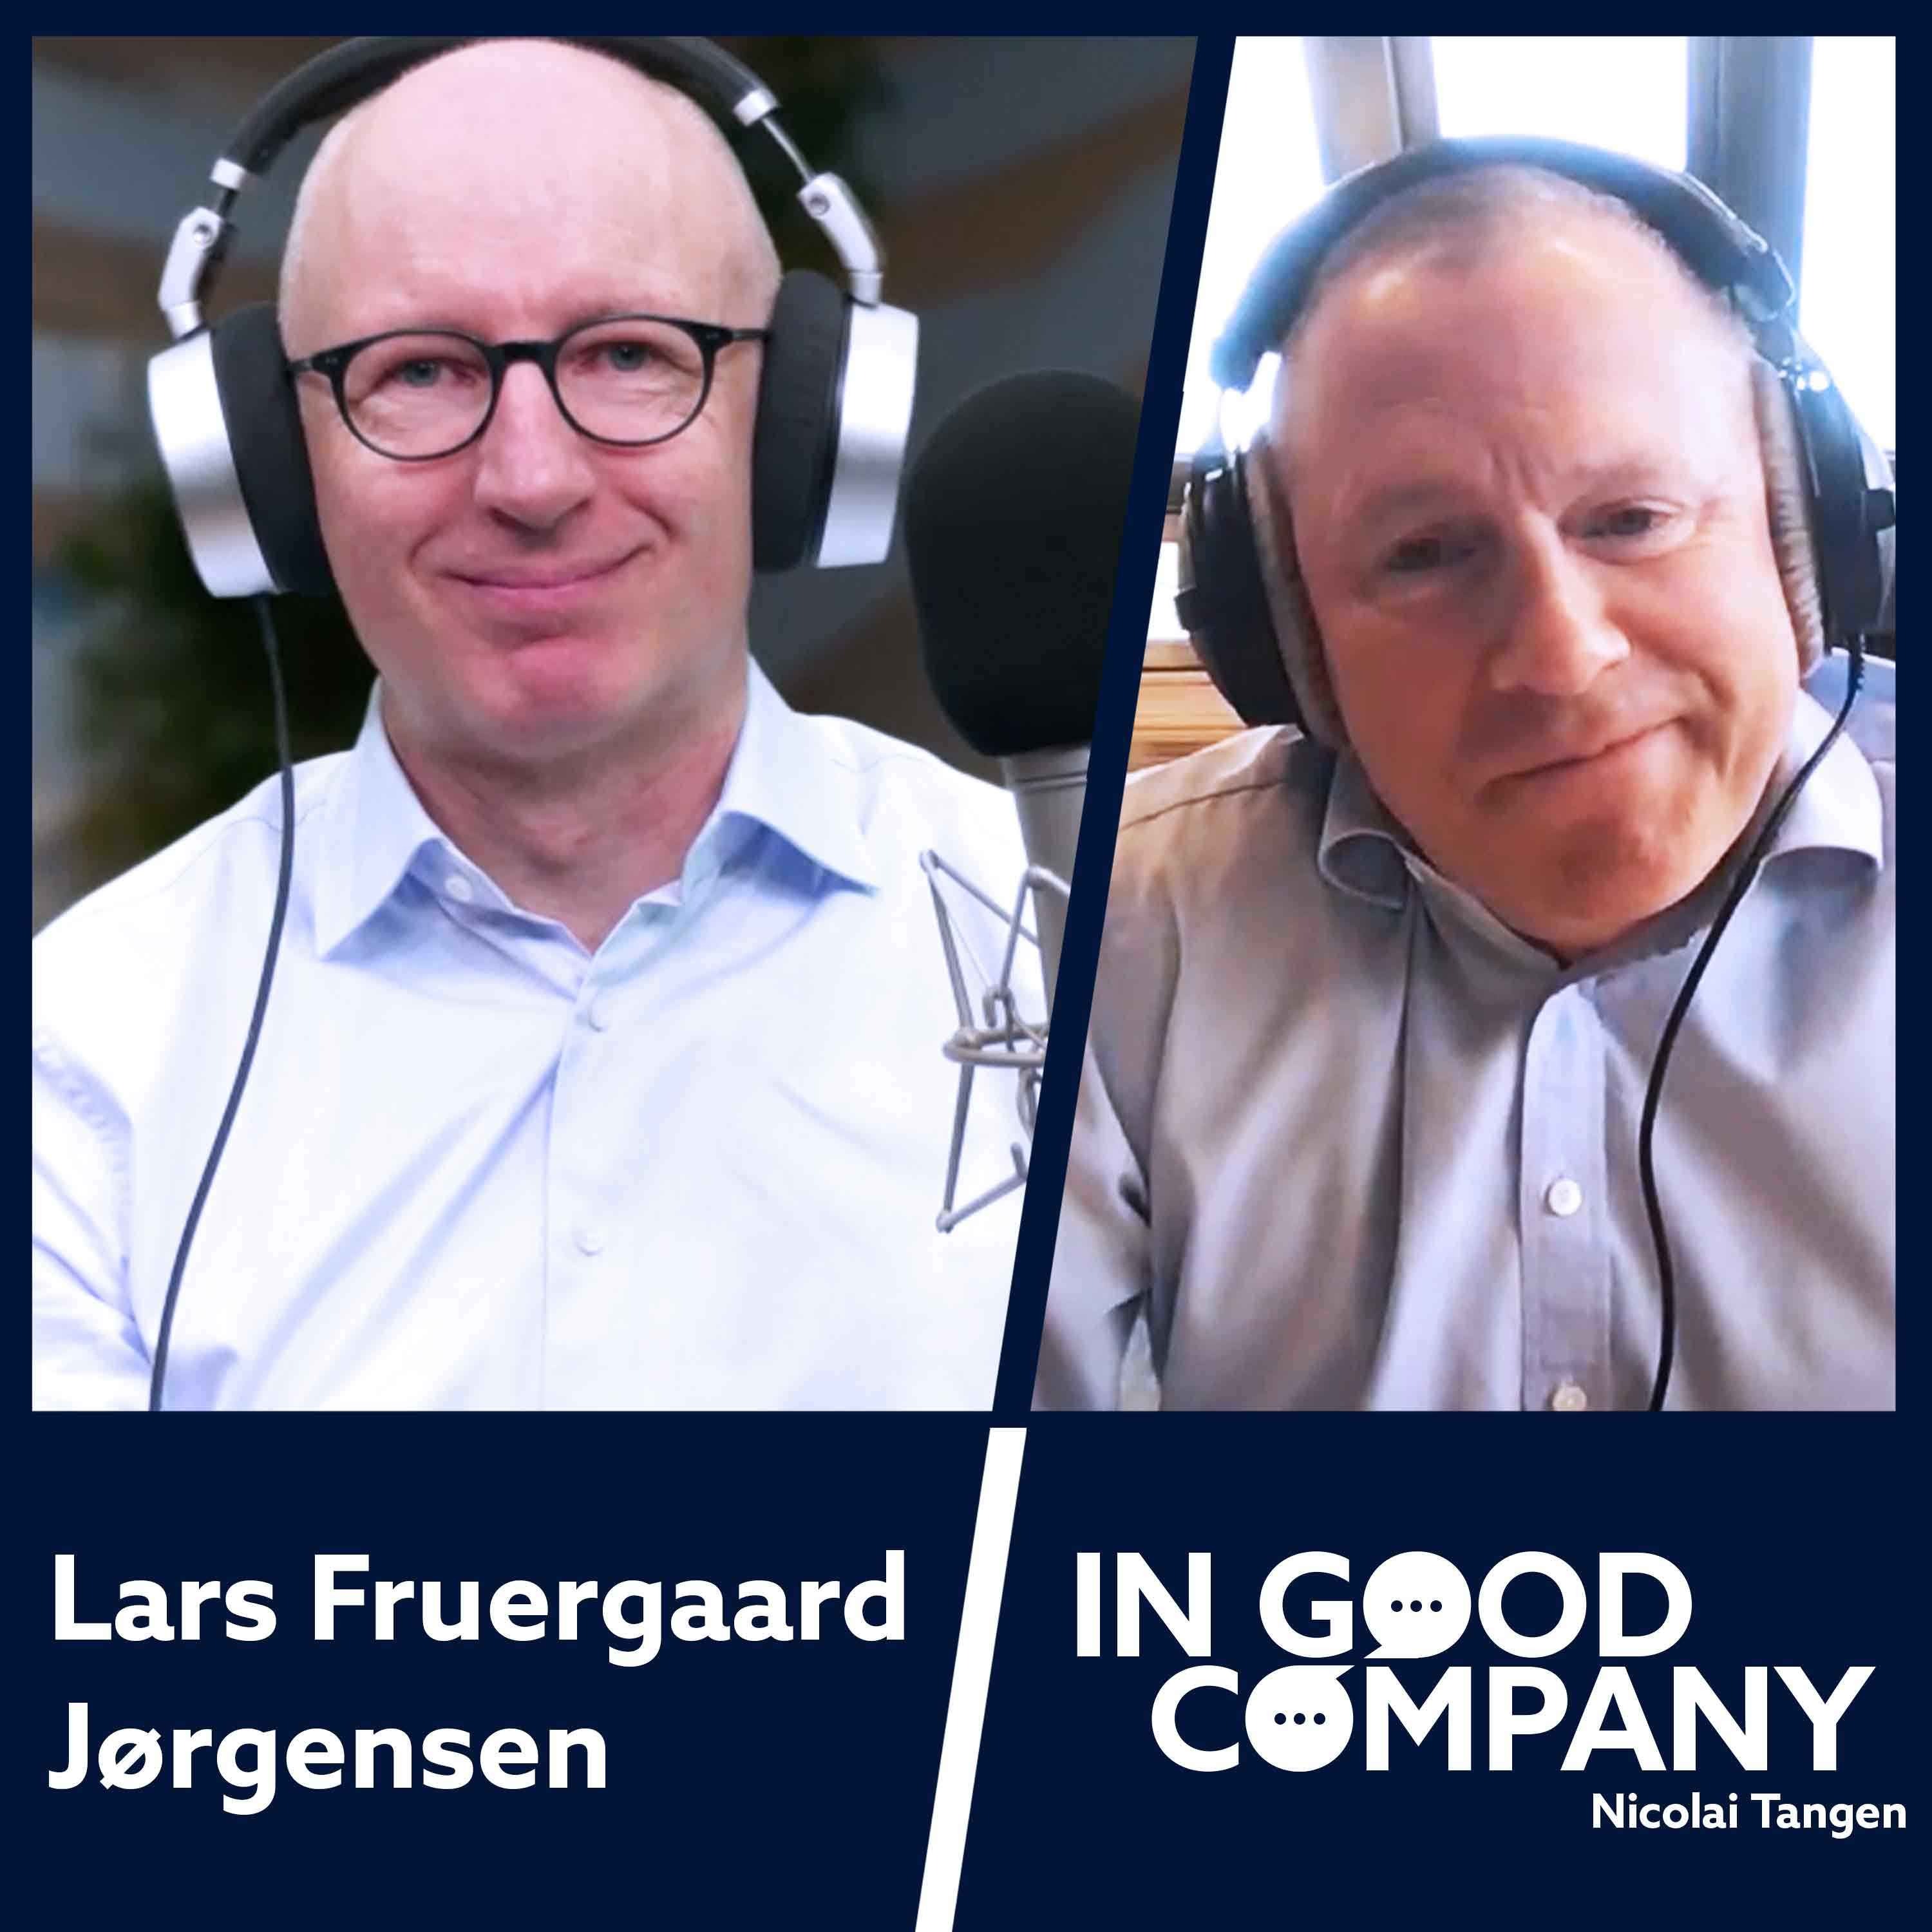 Lars Fruergaard Jørgensen CEO of Novo Nordisk by Norges Bank Investment Management